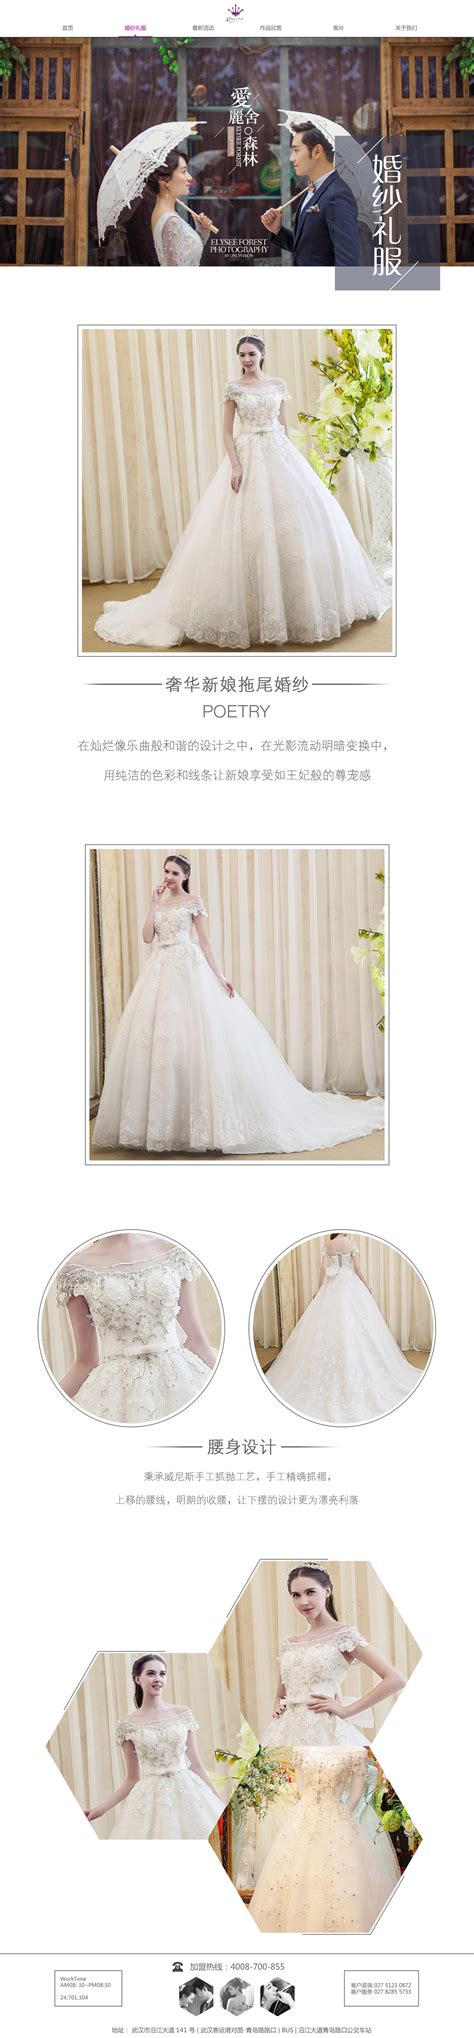 如何制作婚纱摄影网站模板